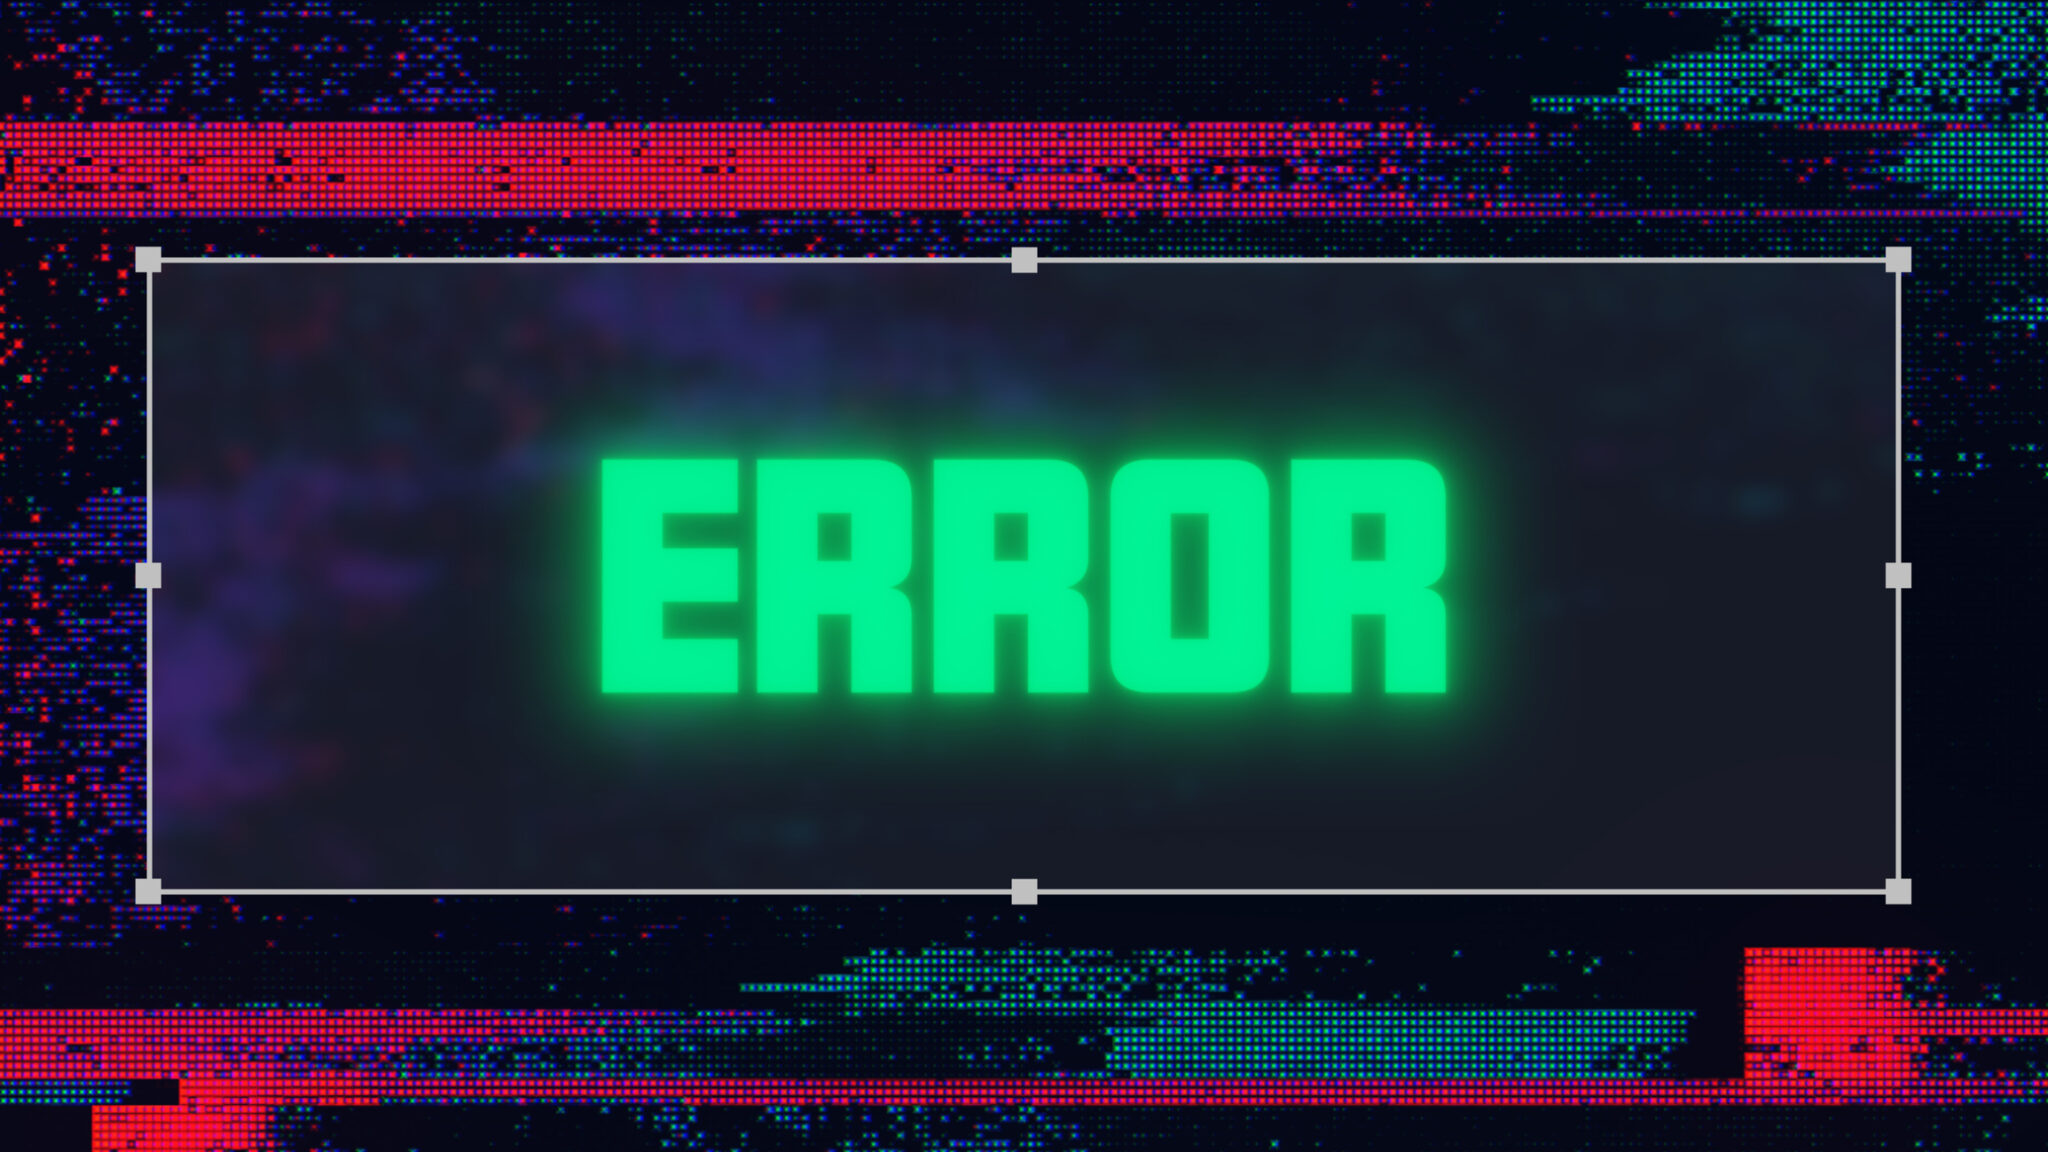 SEO fouten, het woord error in groene letters.